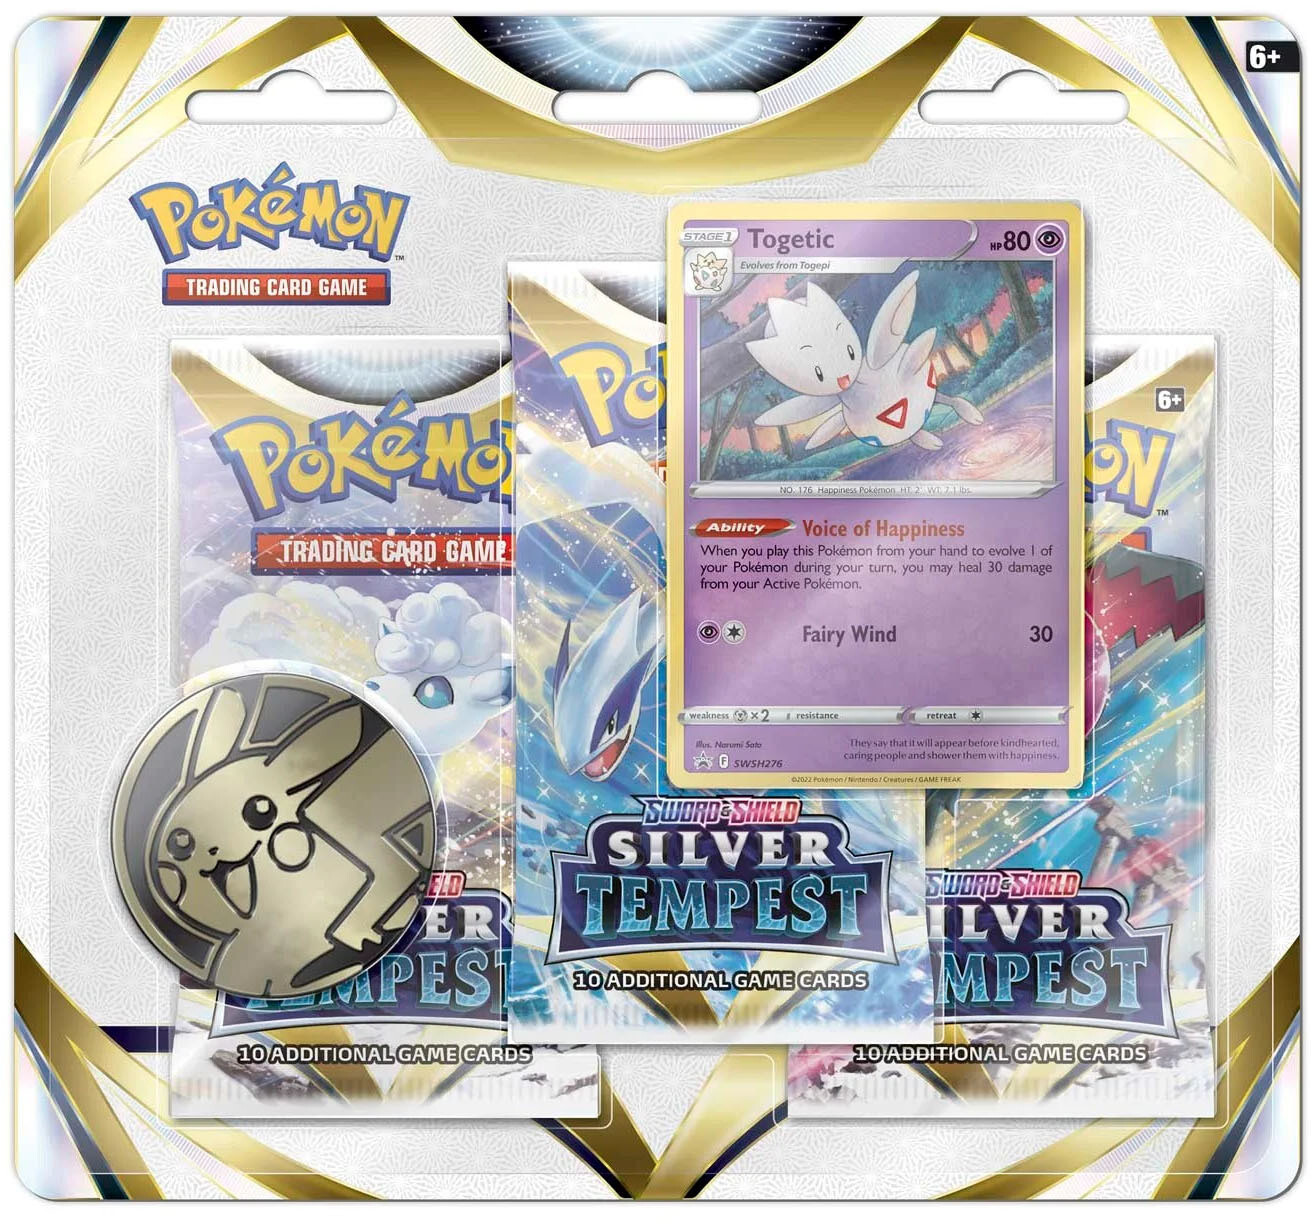 Pokémon - Silberne Sturmwinde - Blister Pack - Togetic - EN